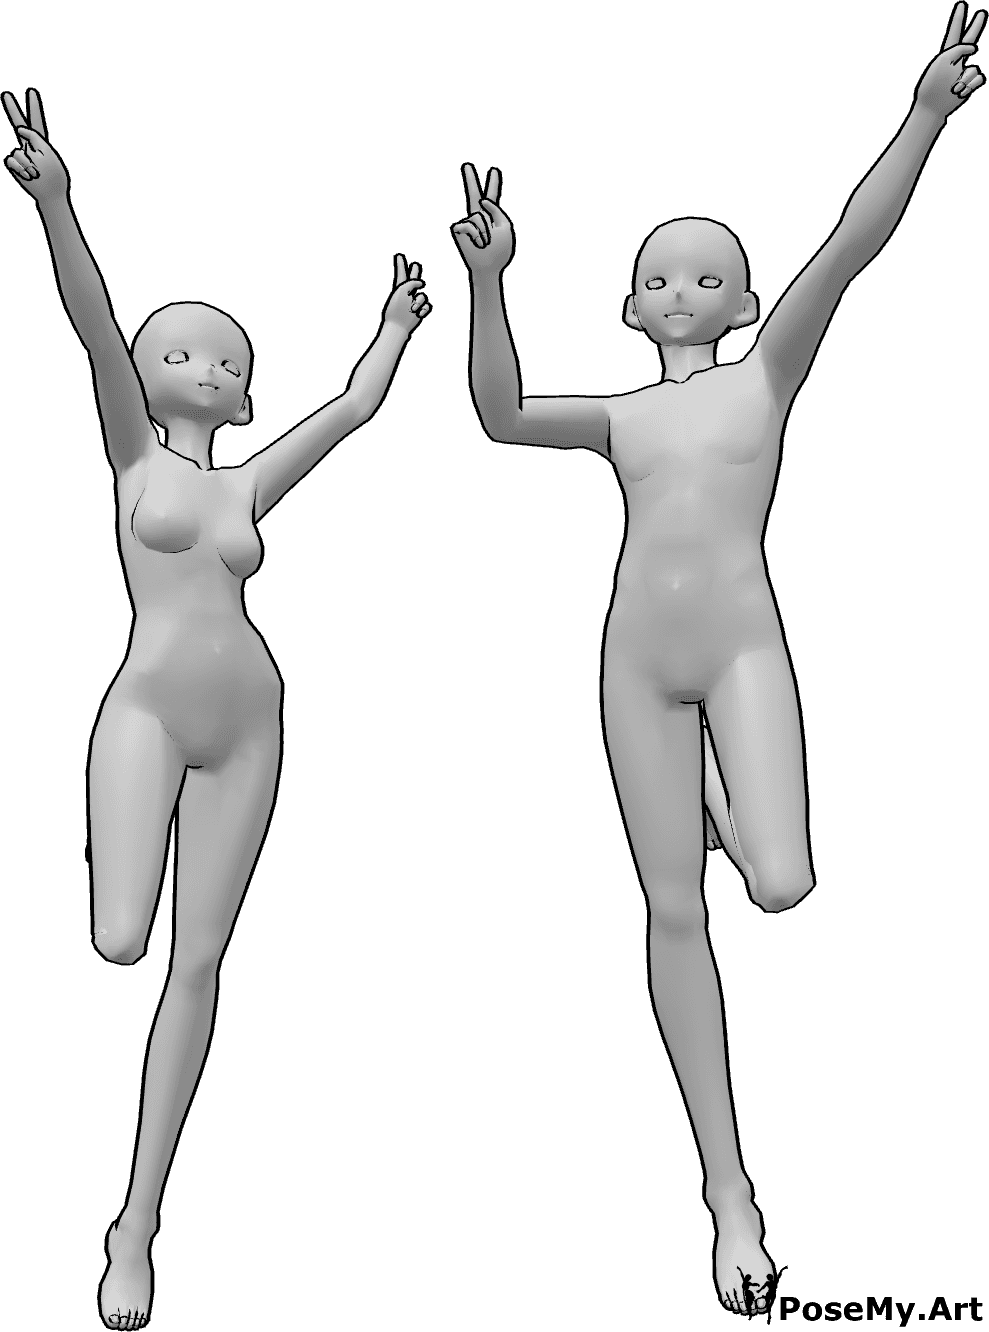 Riferimento alle pose- Anime che saltano in posizione di pace - Anime femmina e maschio saltano e mostrano il segno della pace con entrambe le mani